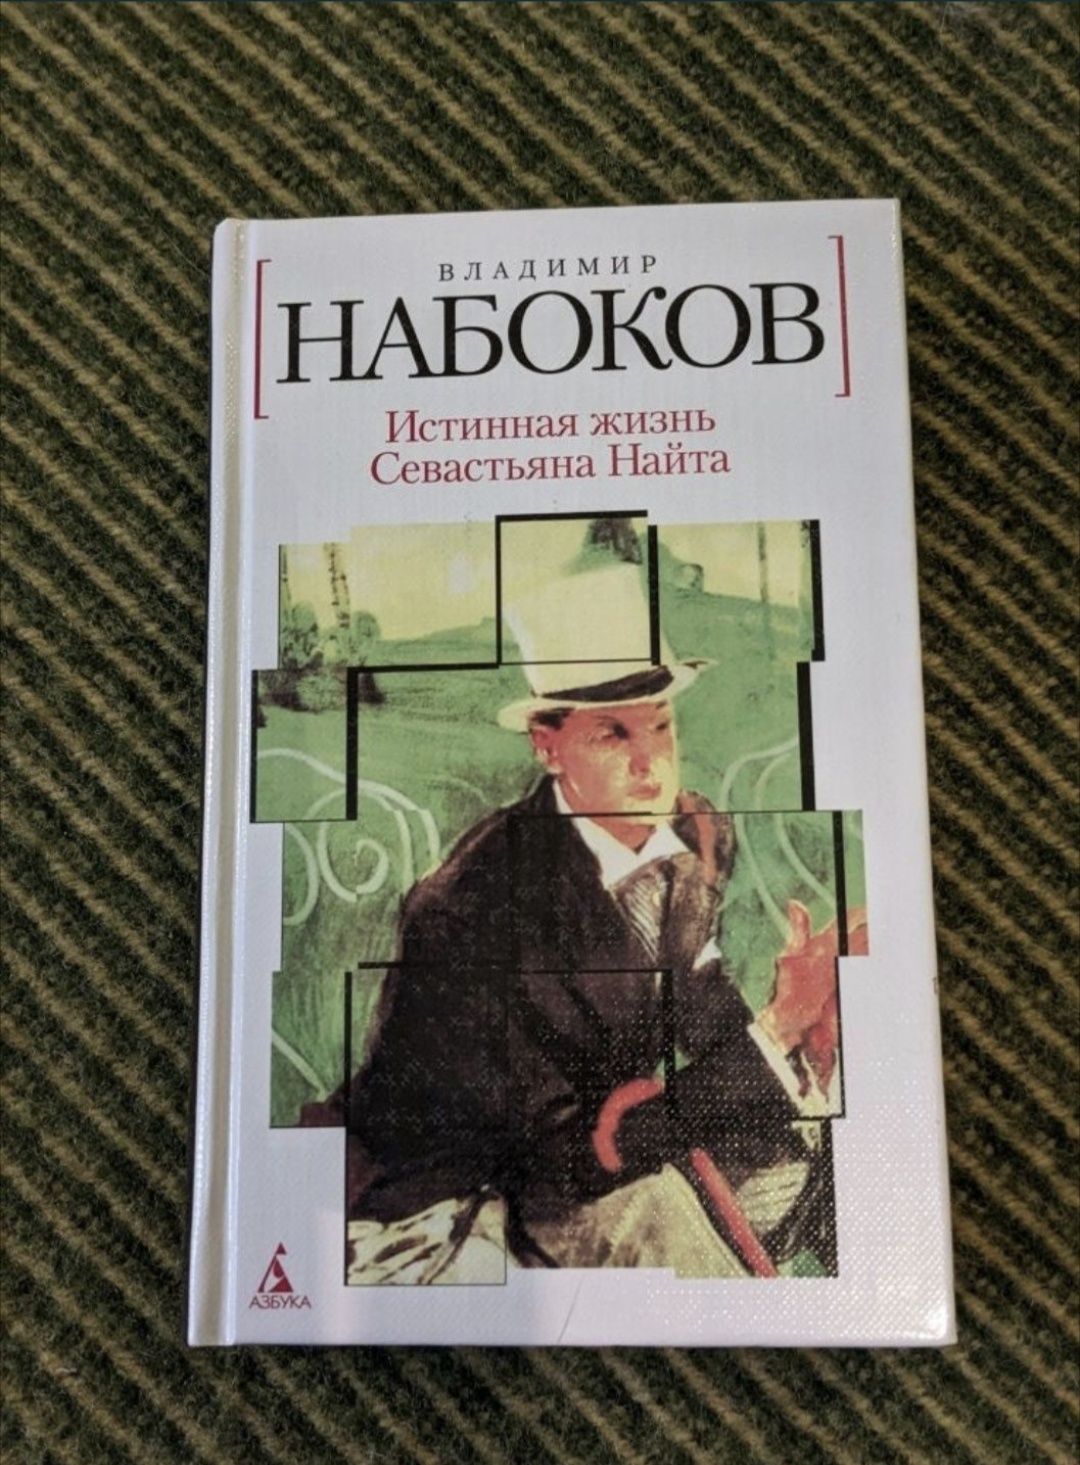 Книги В. Набокова